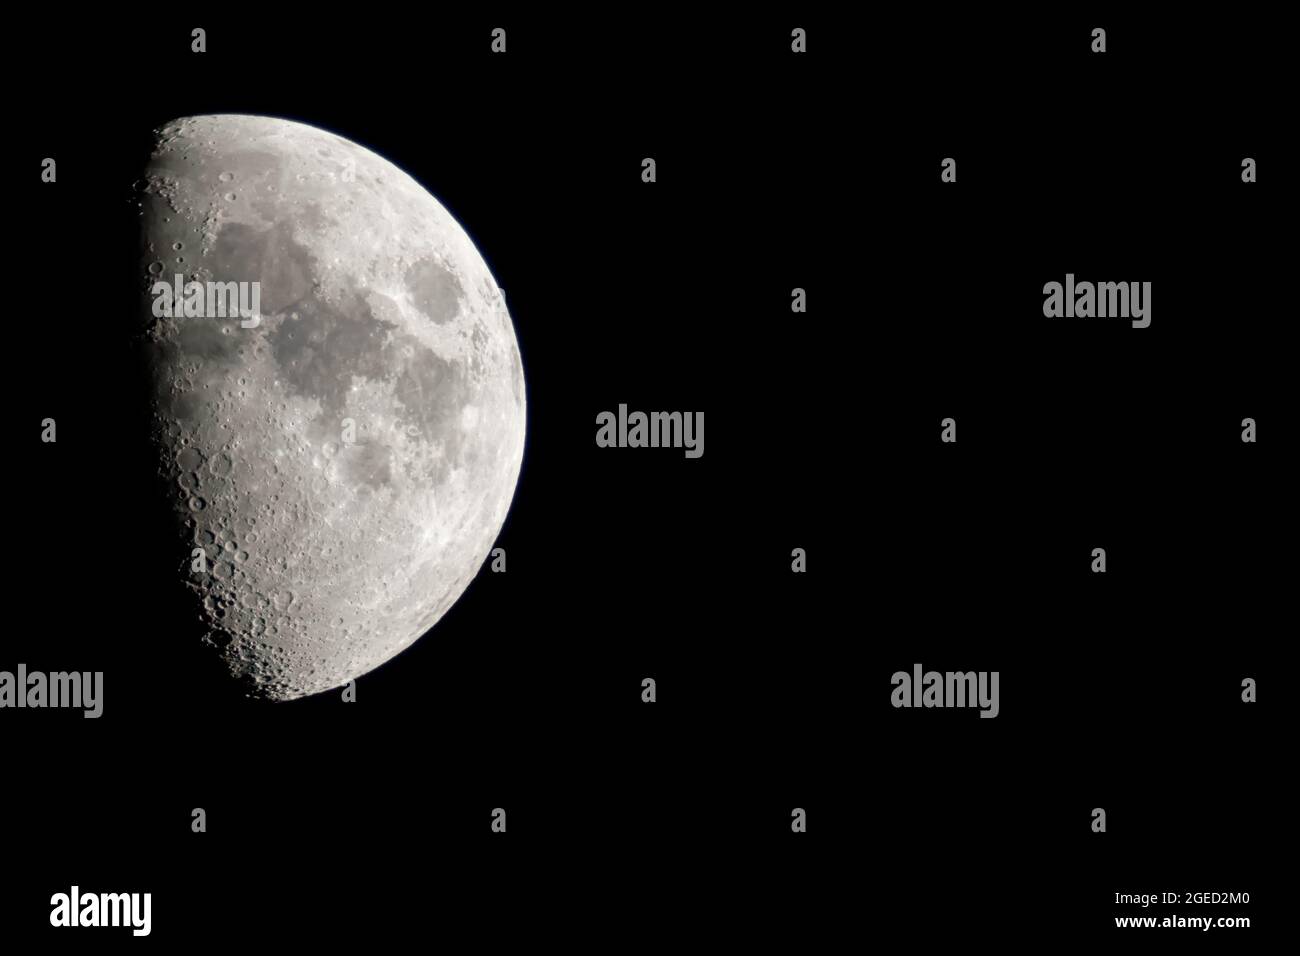 Viertelmond – 1 Woche nach dem Neumond wird sich der Mond um die Welt drehen, etwa 1 von 4 seiner Umlaufbahn. Wir werden die Hälfte der sonnenexponierten Seite sehen Stockfoto